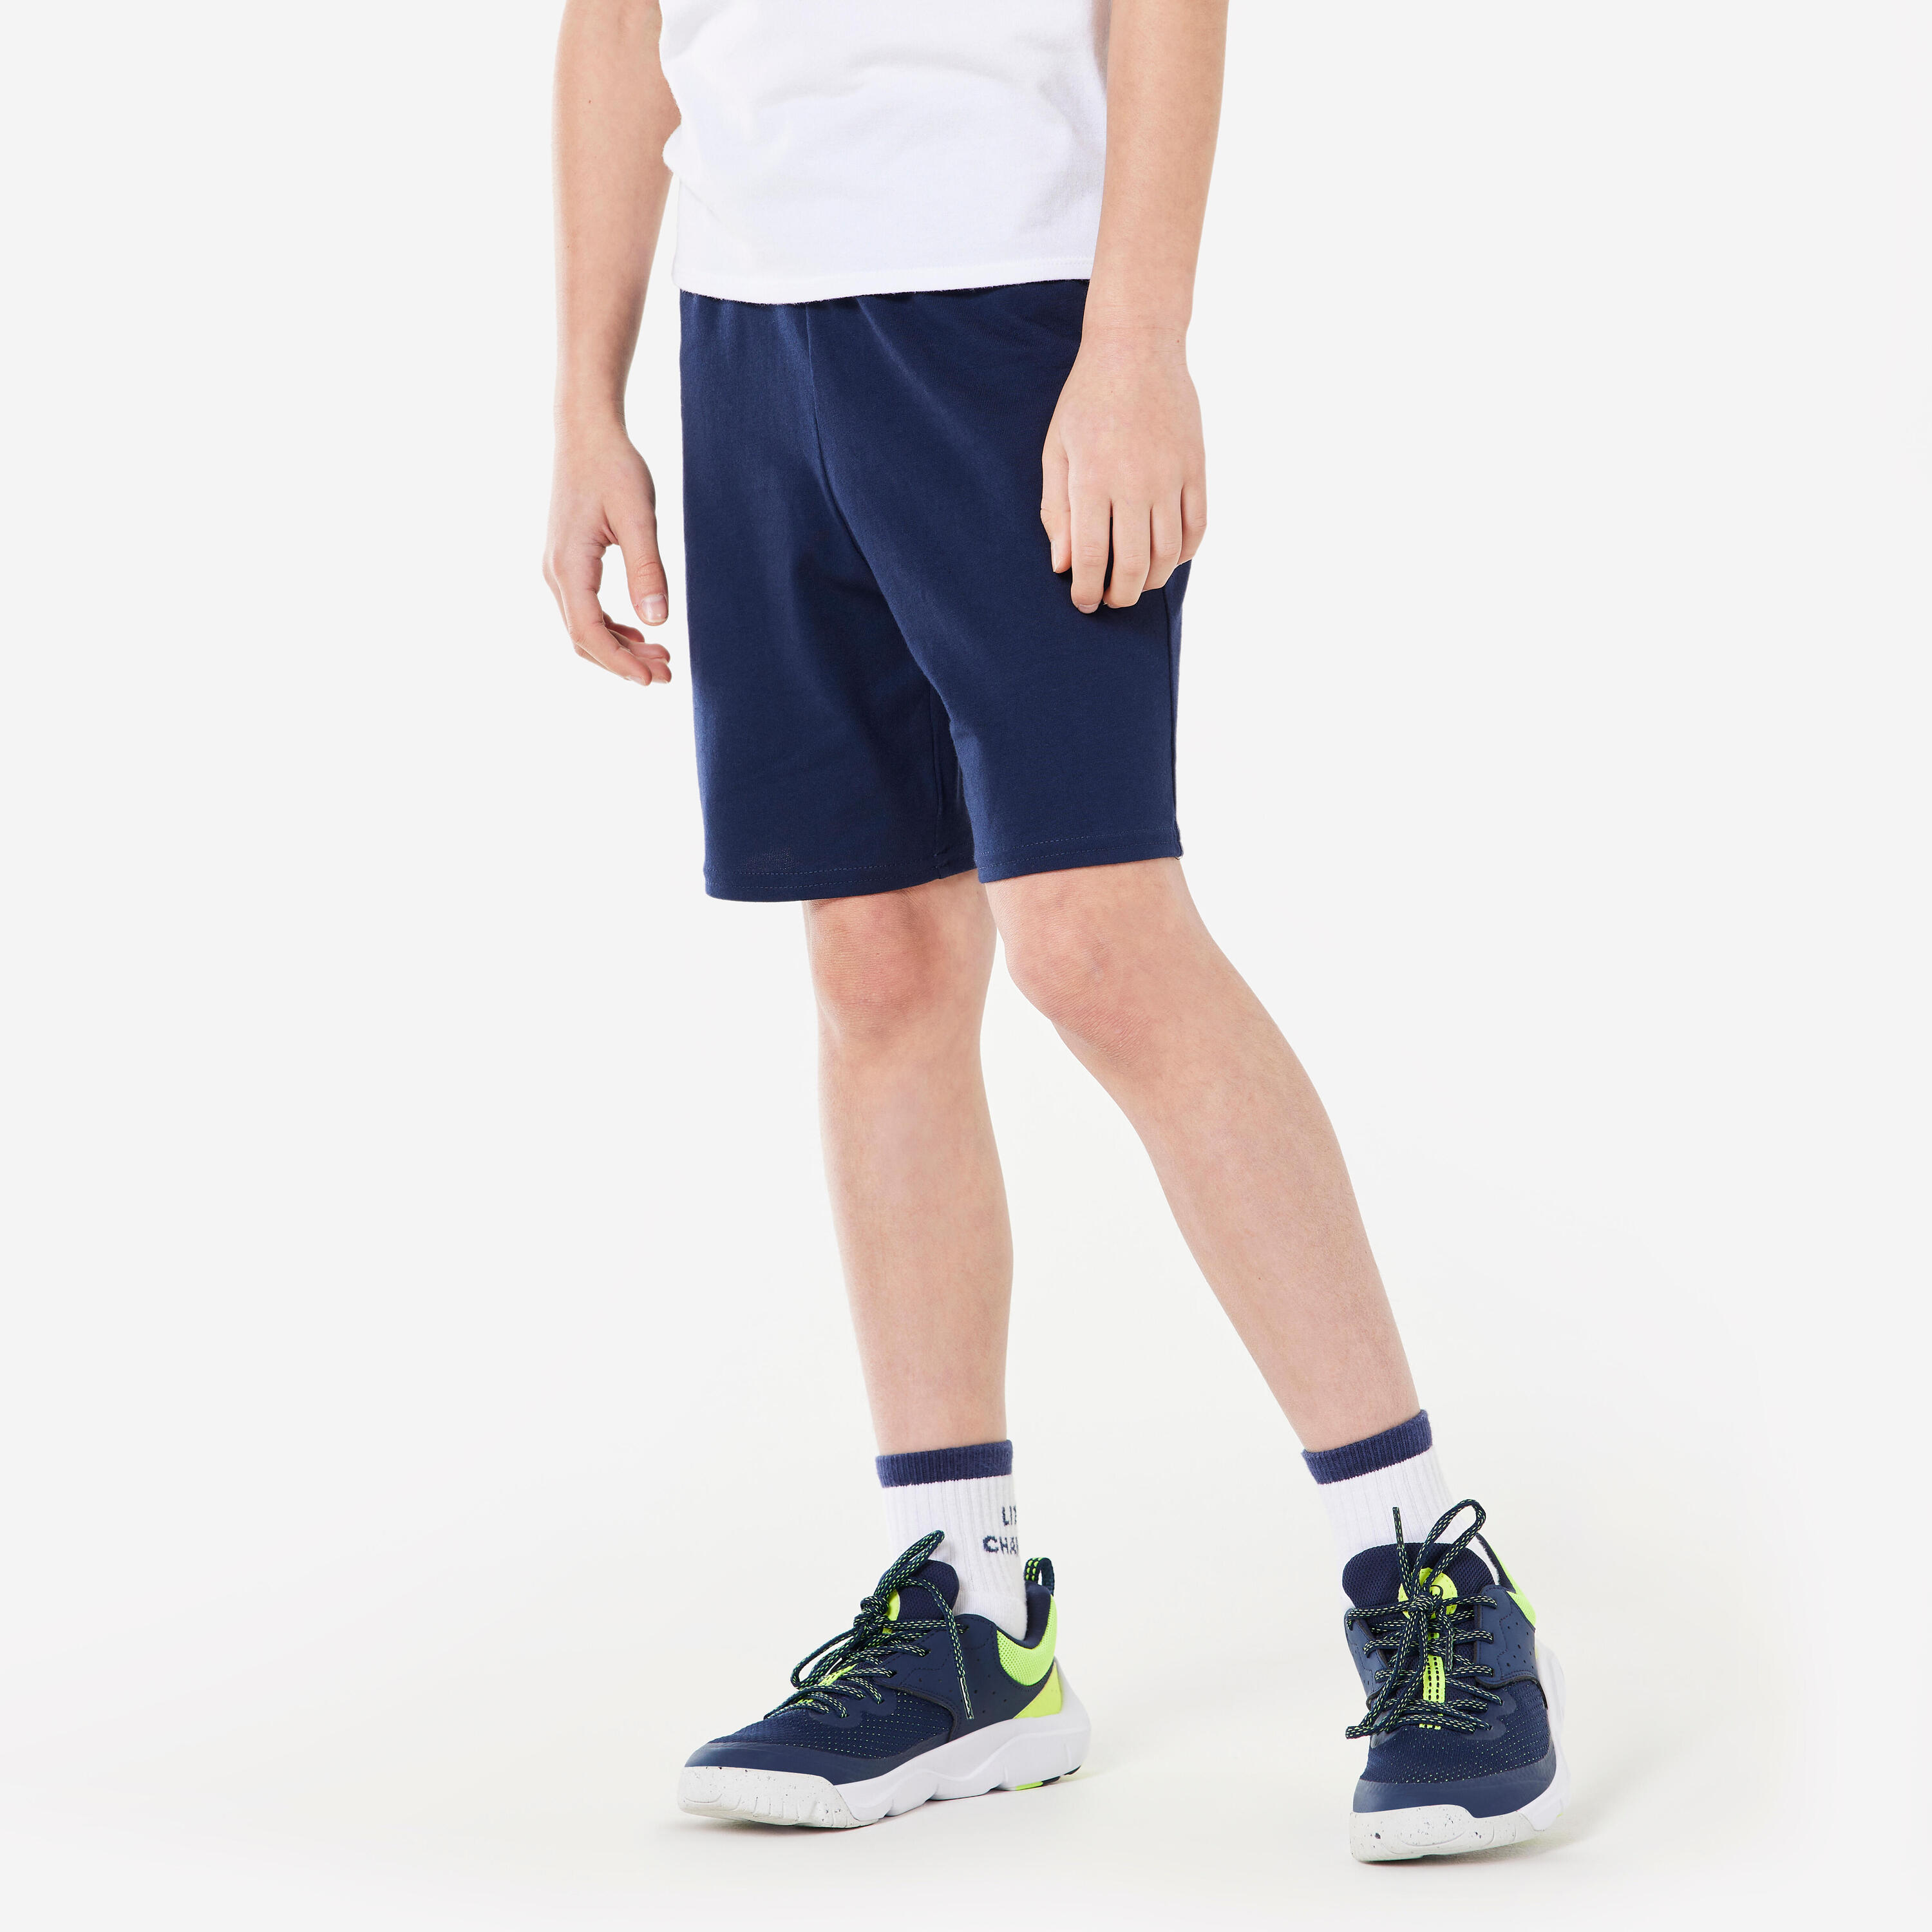 DOMYOS Kids' Basic Cotton Shorts - Navy